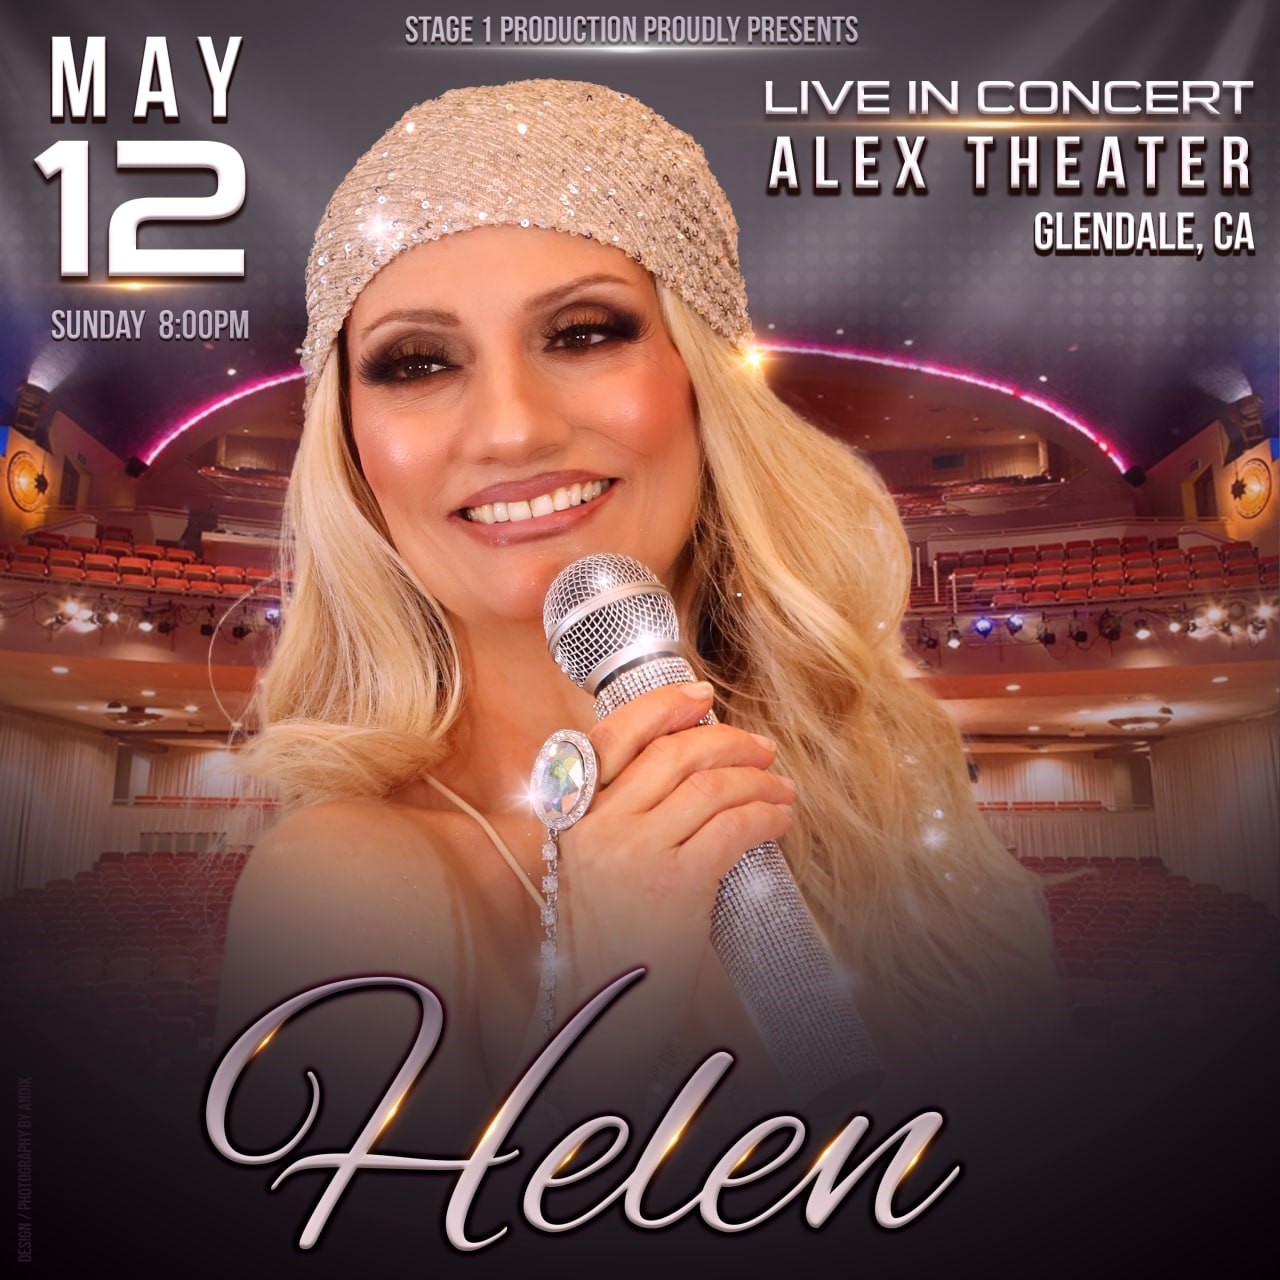 Stage1 Production Proudly Presents Helen Live in Concert, Glendale/Alex Theatre on mai 12, 20:00@Copy:ALEX THEATER * - Choisissez un siège,Achetez des billets et obtenez des informations surstage1production 